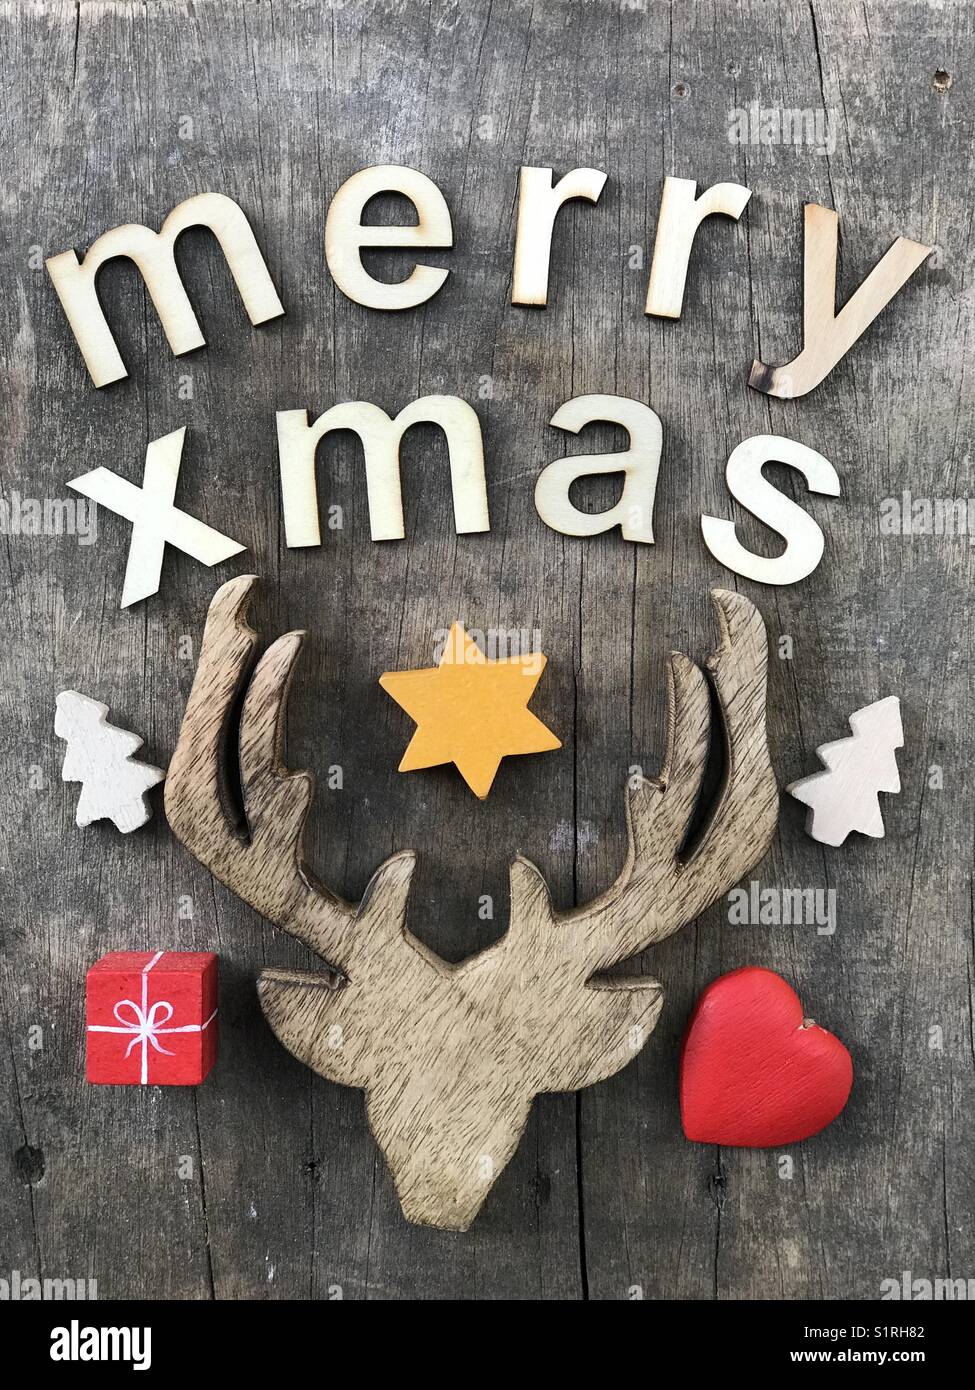 Frohe Weihnachten mit handgefertigten Holzmöbeln Briefe und Objekte Stockfoto